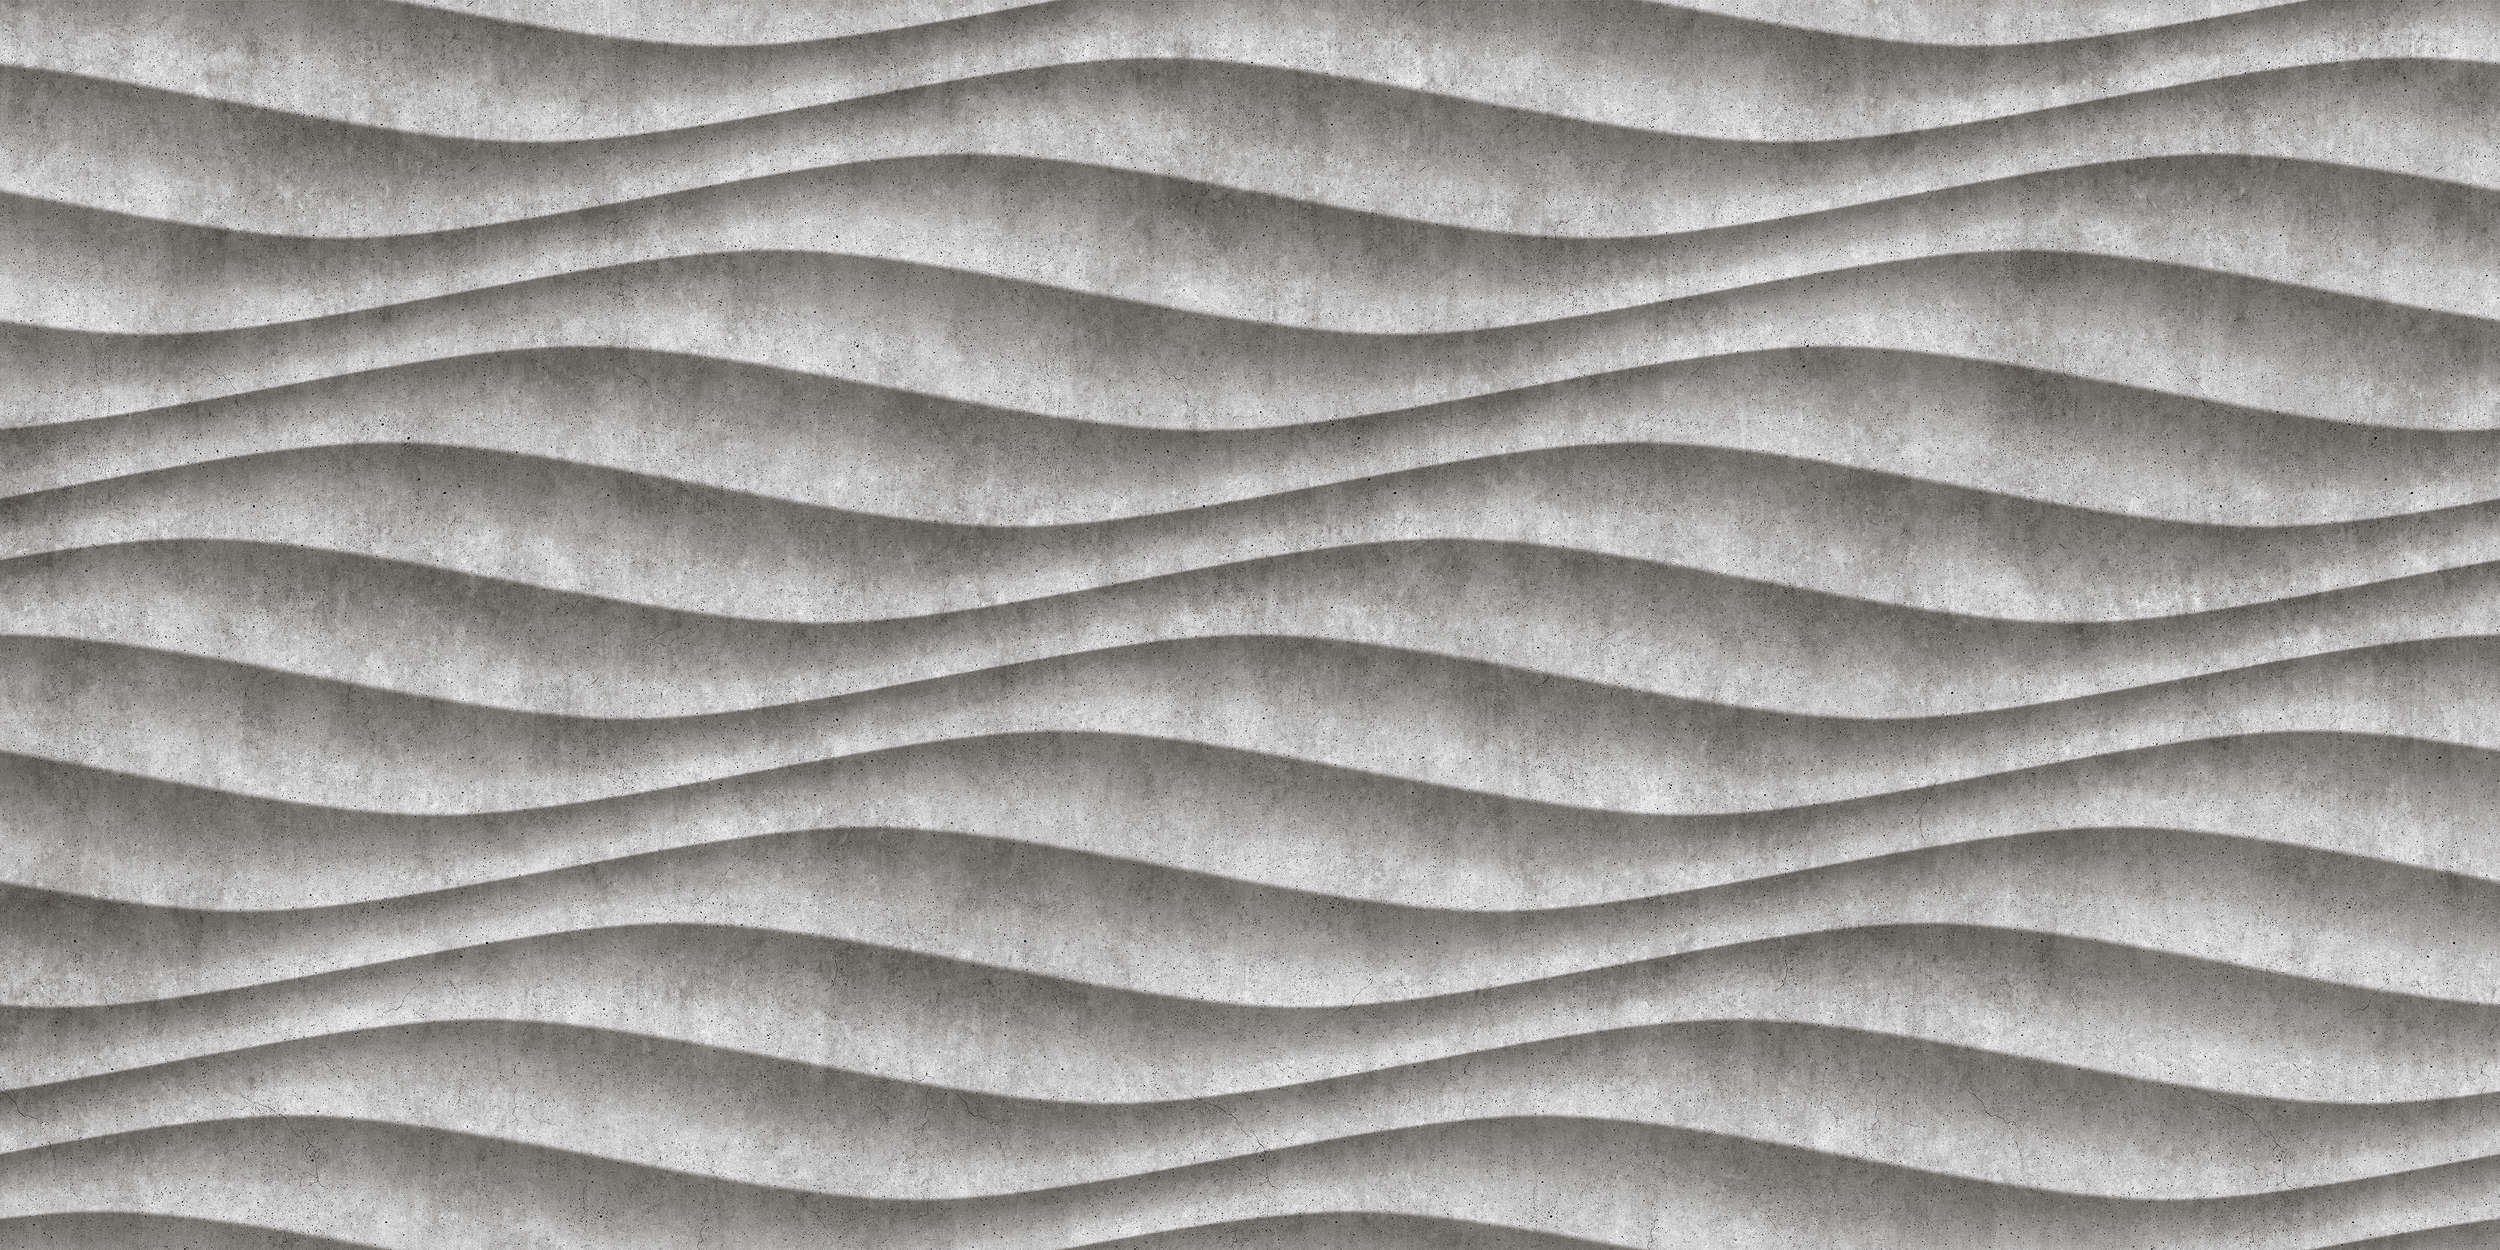             Canyon 2 - Cool 3D Concrete Waves Wallpaper - Grey, Black | Premium Smooth Non-woven
        